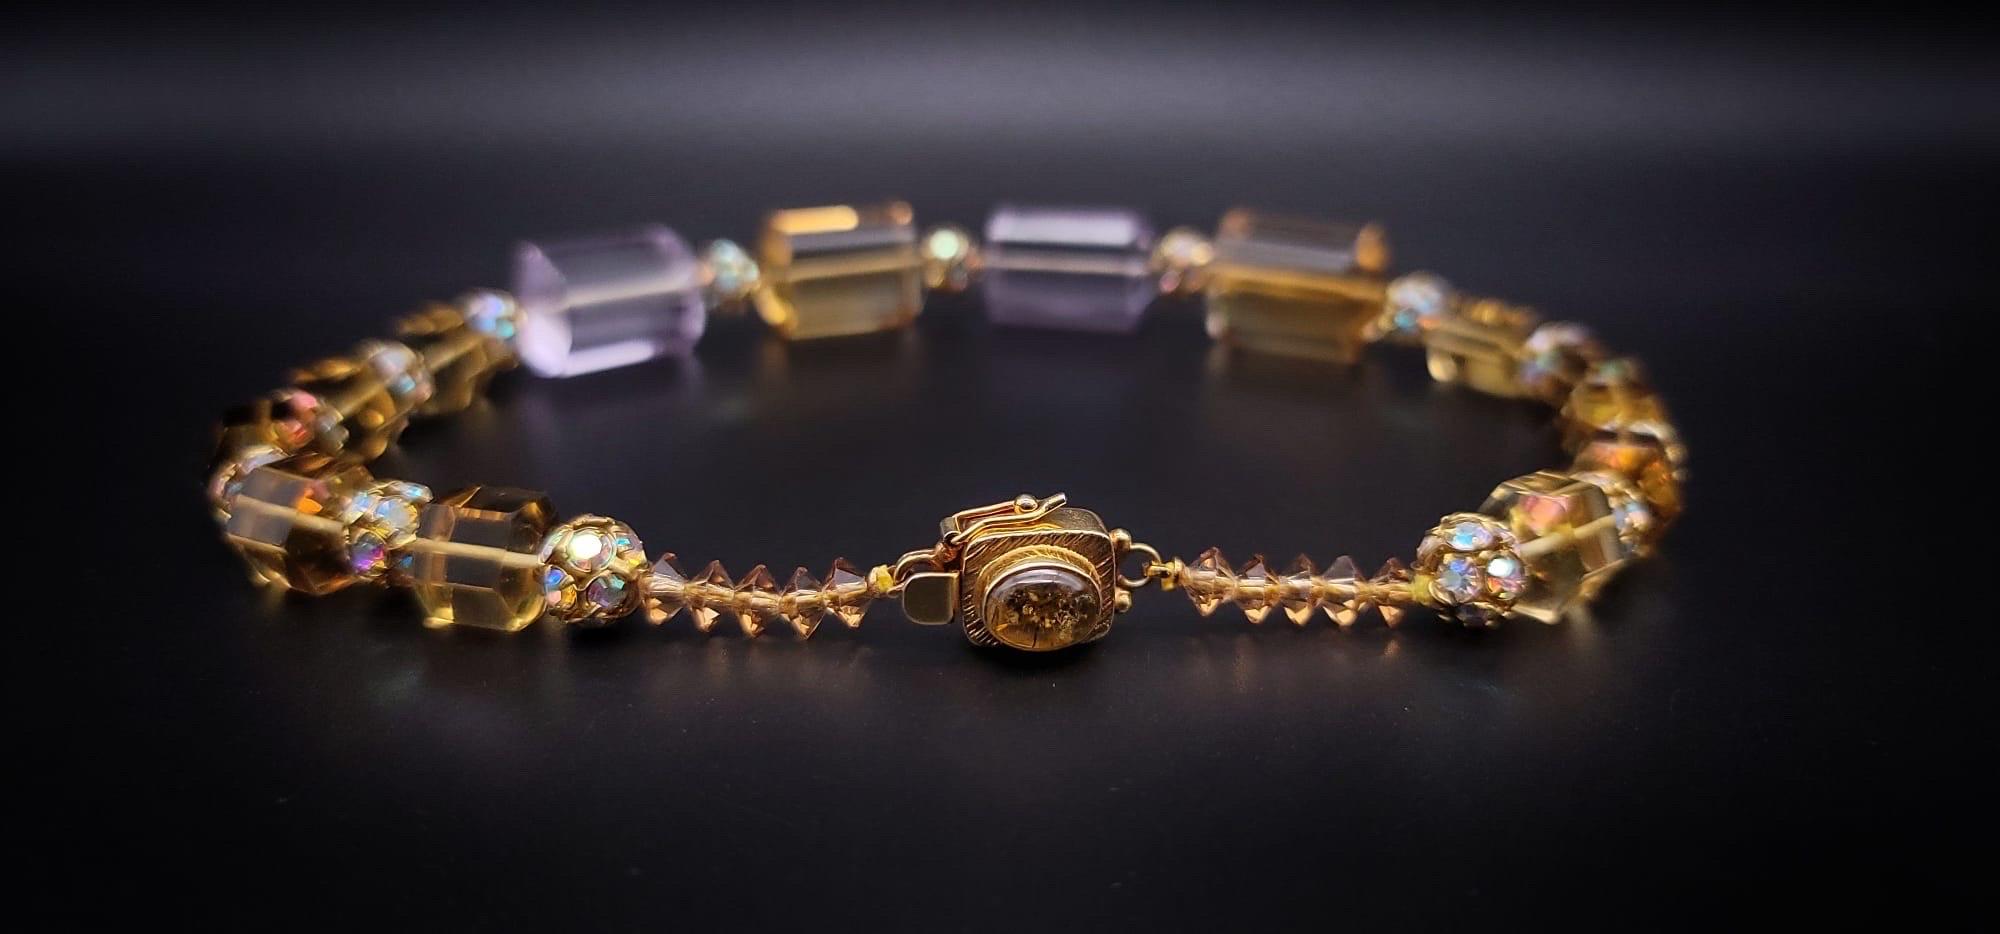 A.Jeschel Precious Stone Necklace Quartz Amethyst Topaz Citrine For Sale 1